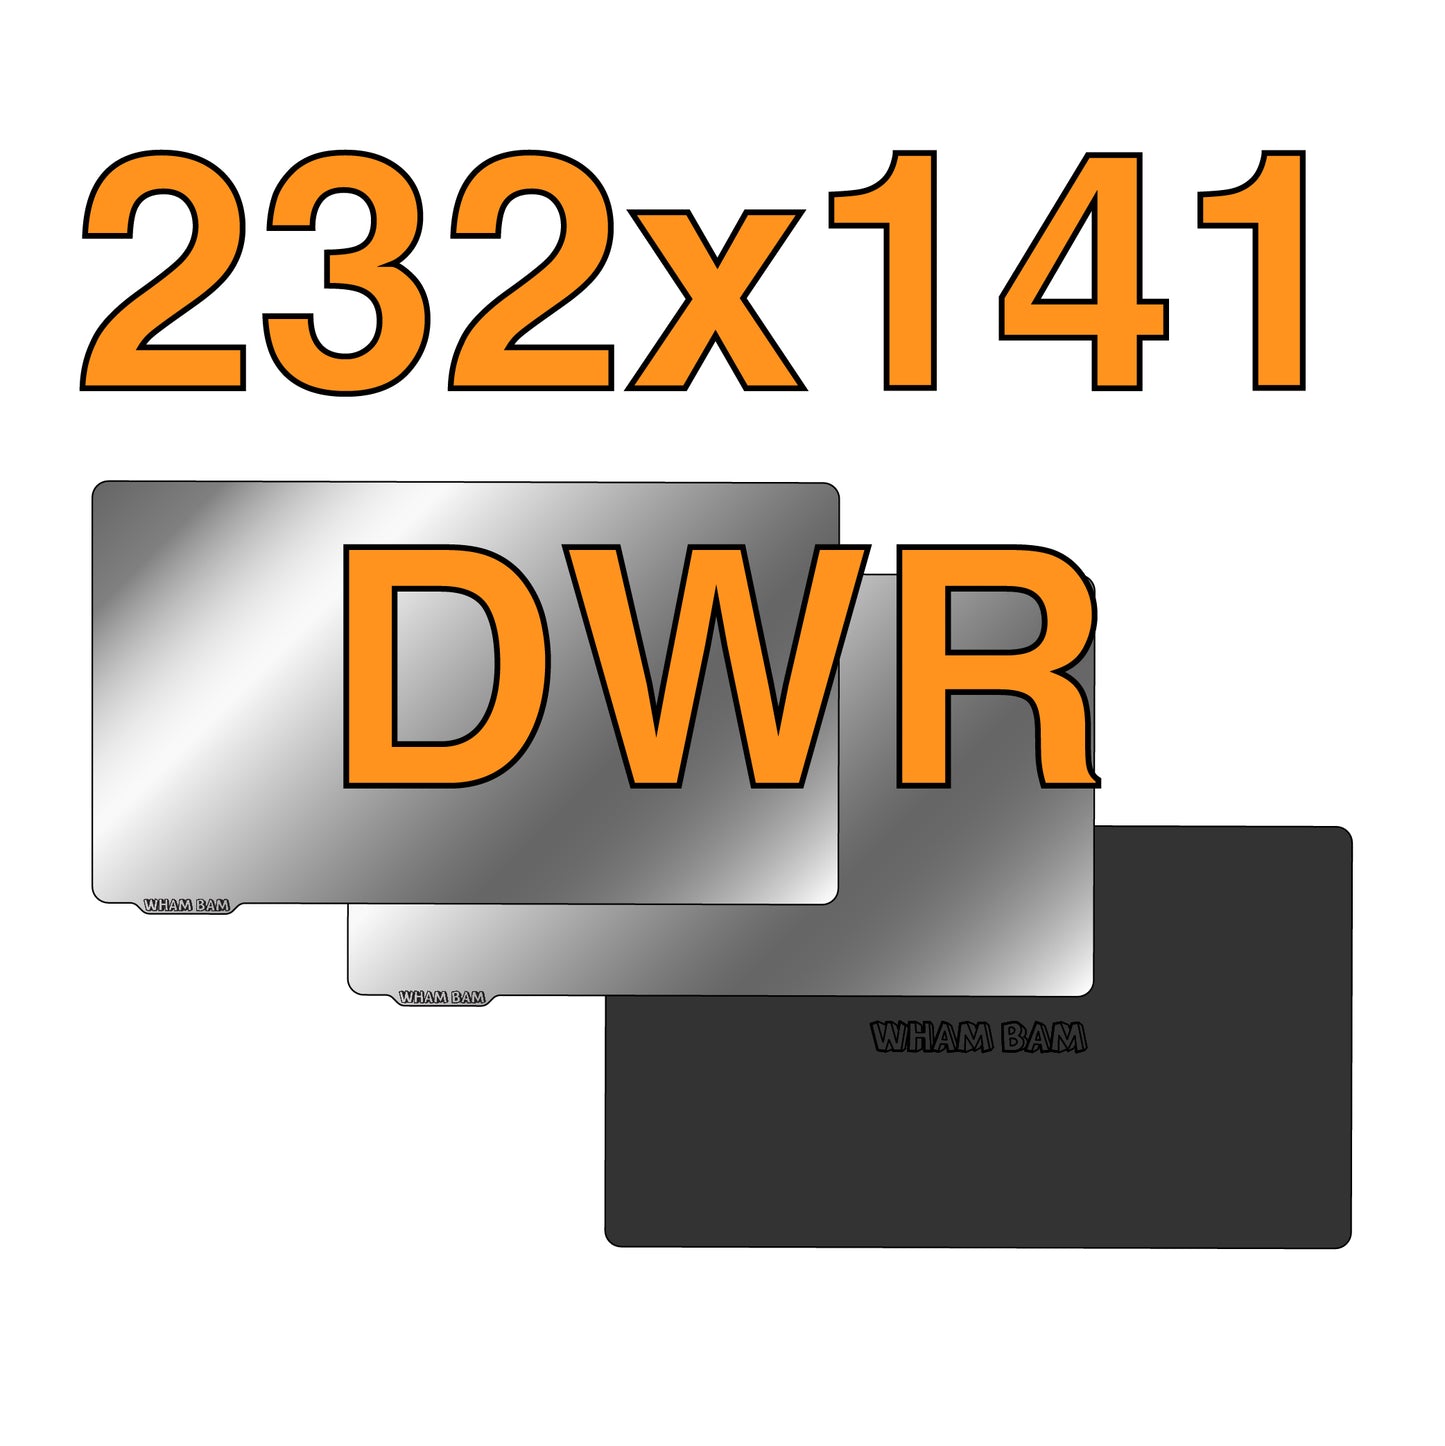 232 x 141 - EPAX 3D E10, E10 5k Mono, E10-14KW, And Concepts 3D's Athena